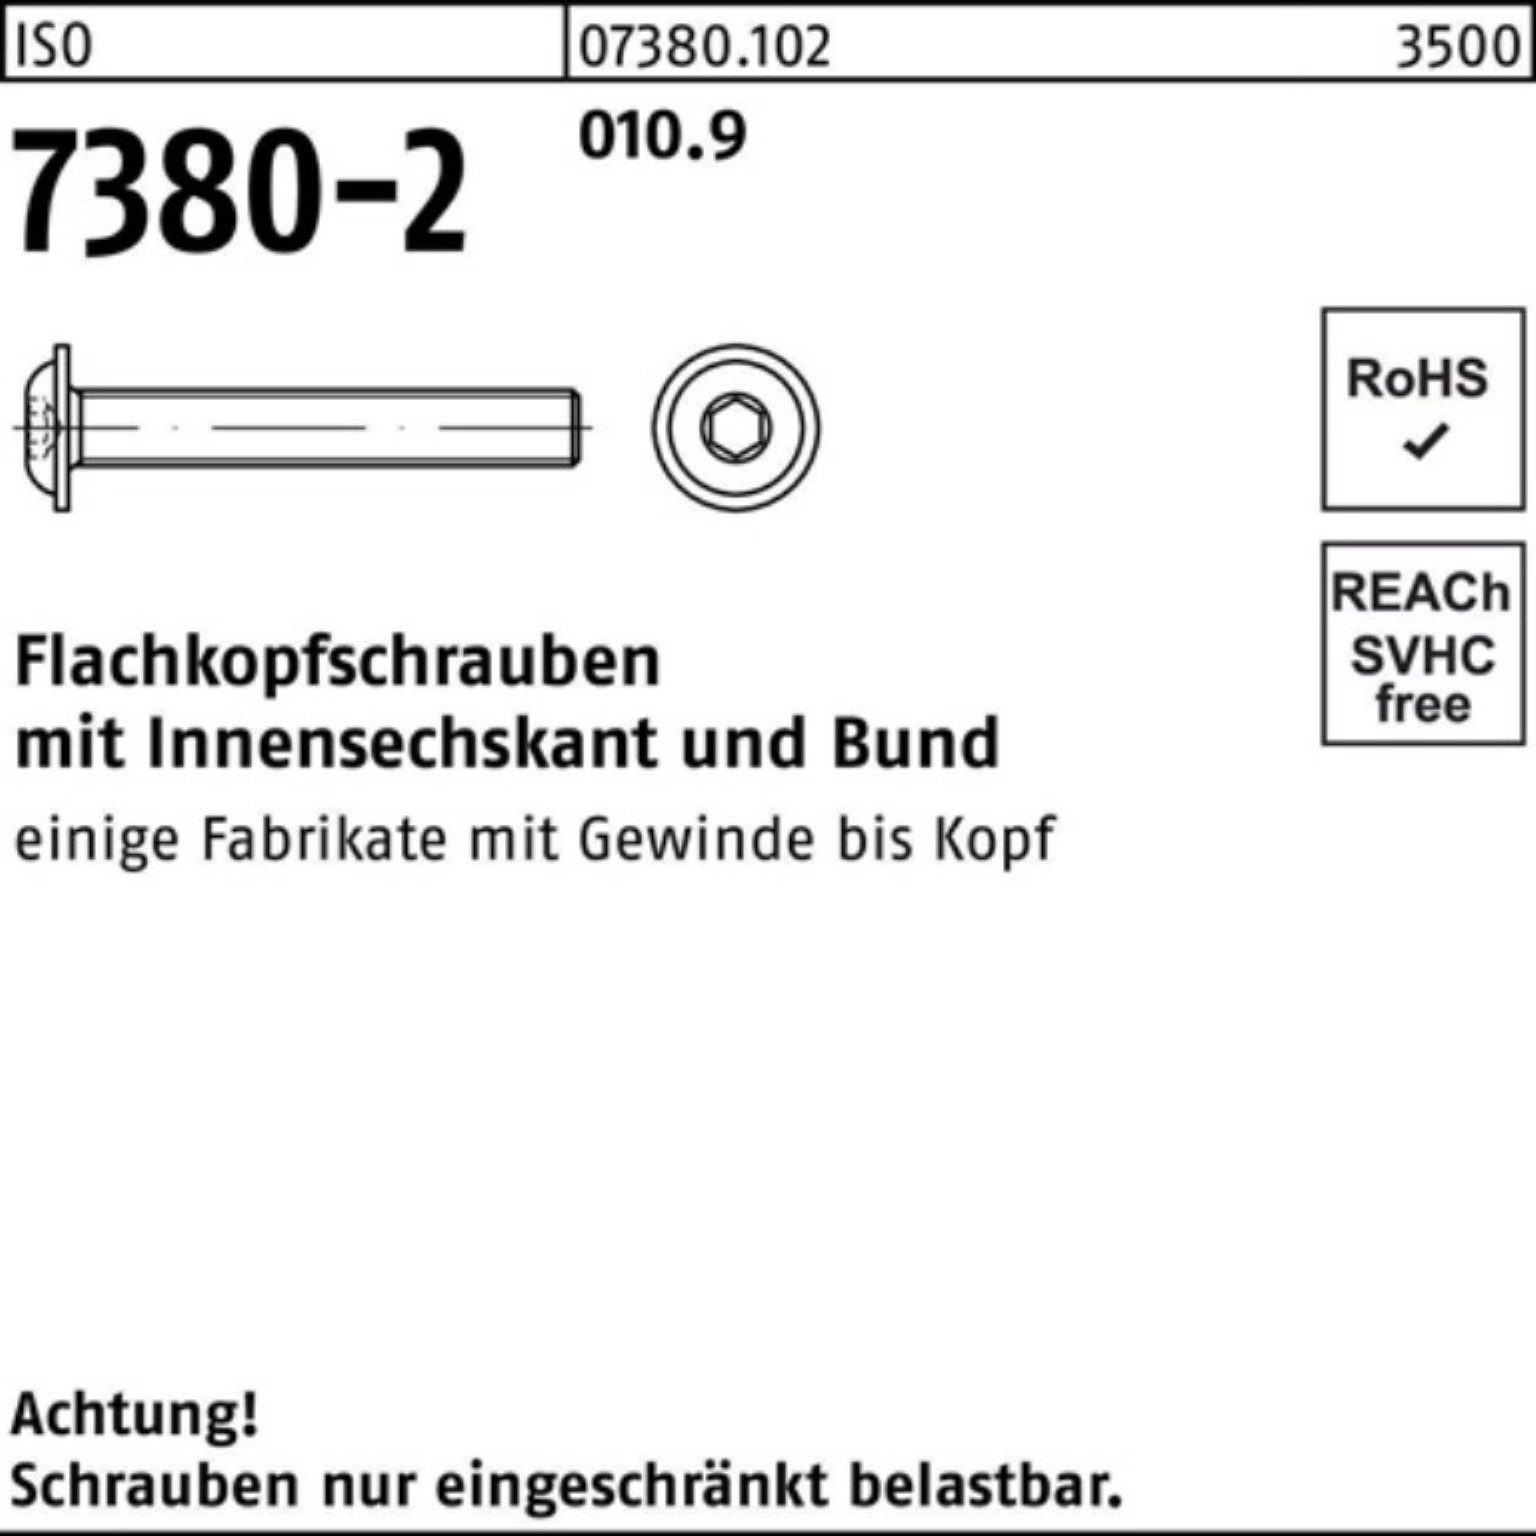 M4x 500 Reyher Schraube 6 7380-2 Bund/Innen-6kt ISO Pack 010.9 Flachkopfschraube 500er